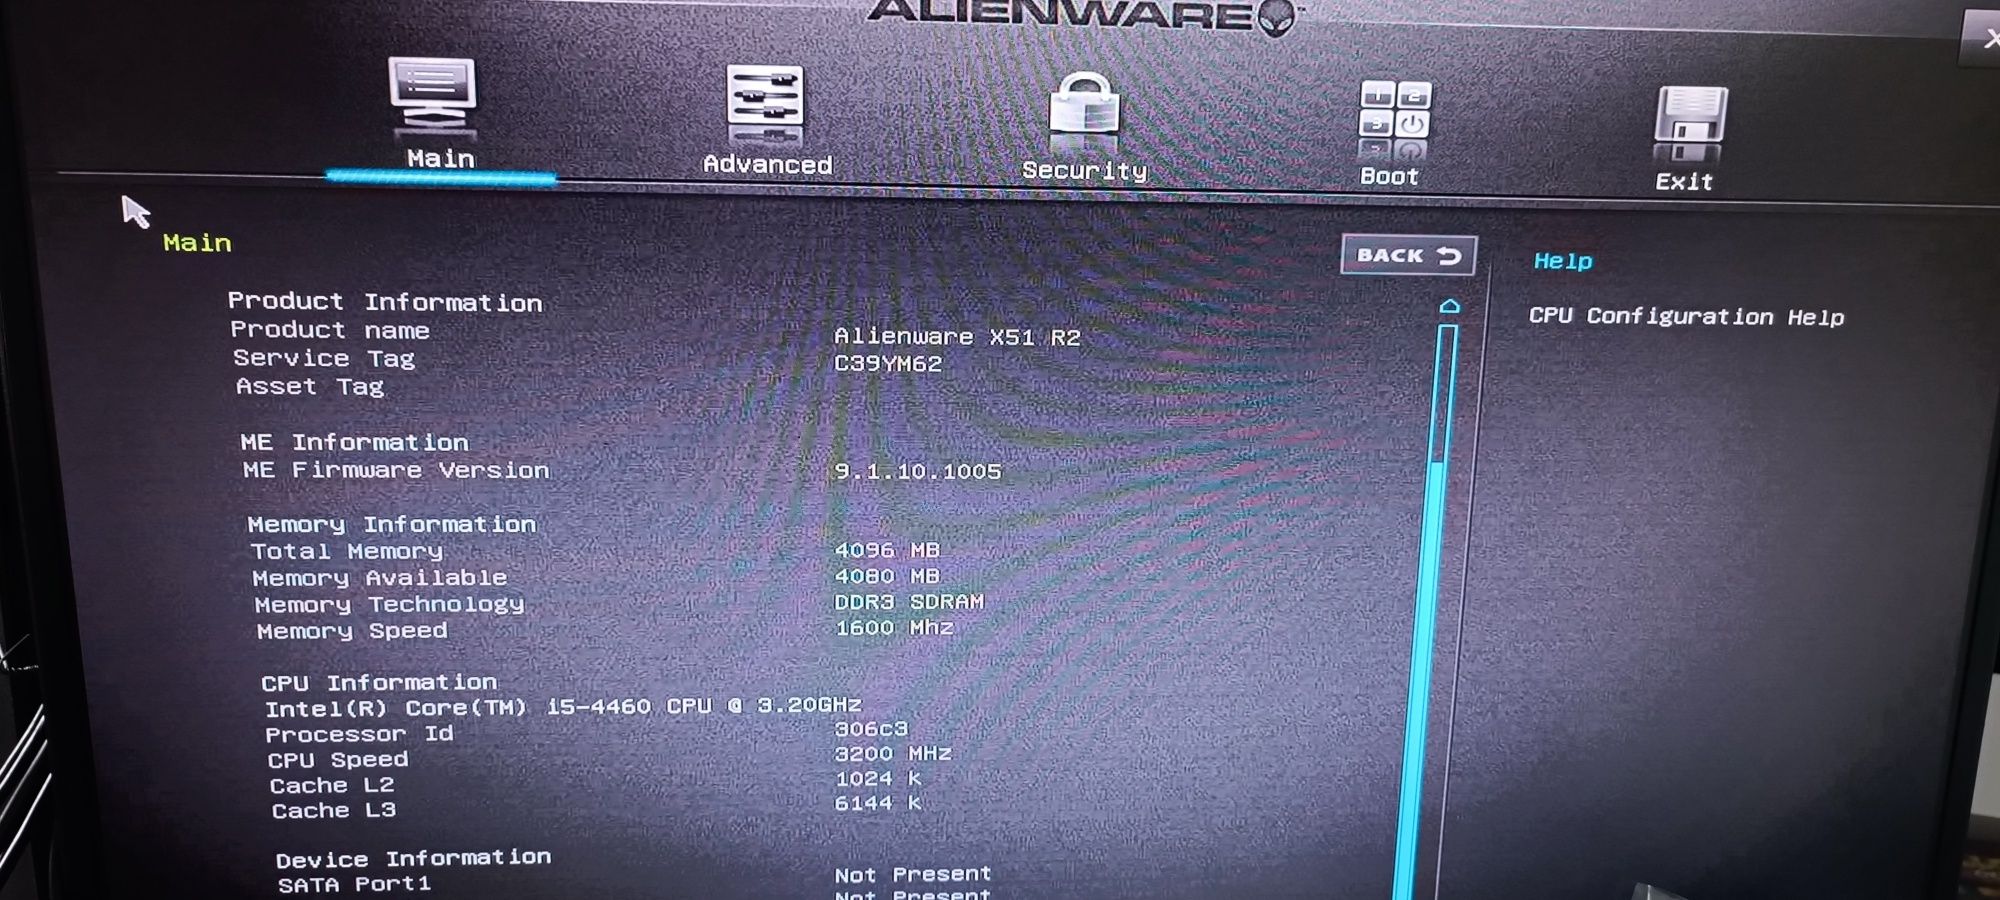 Alienware X51 R2